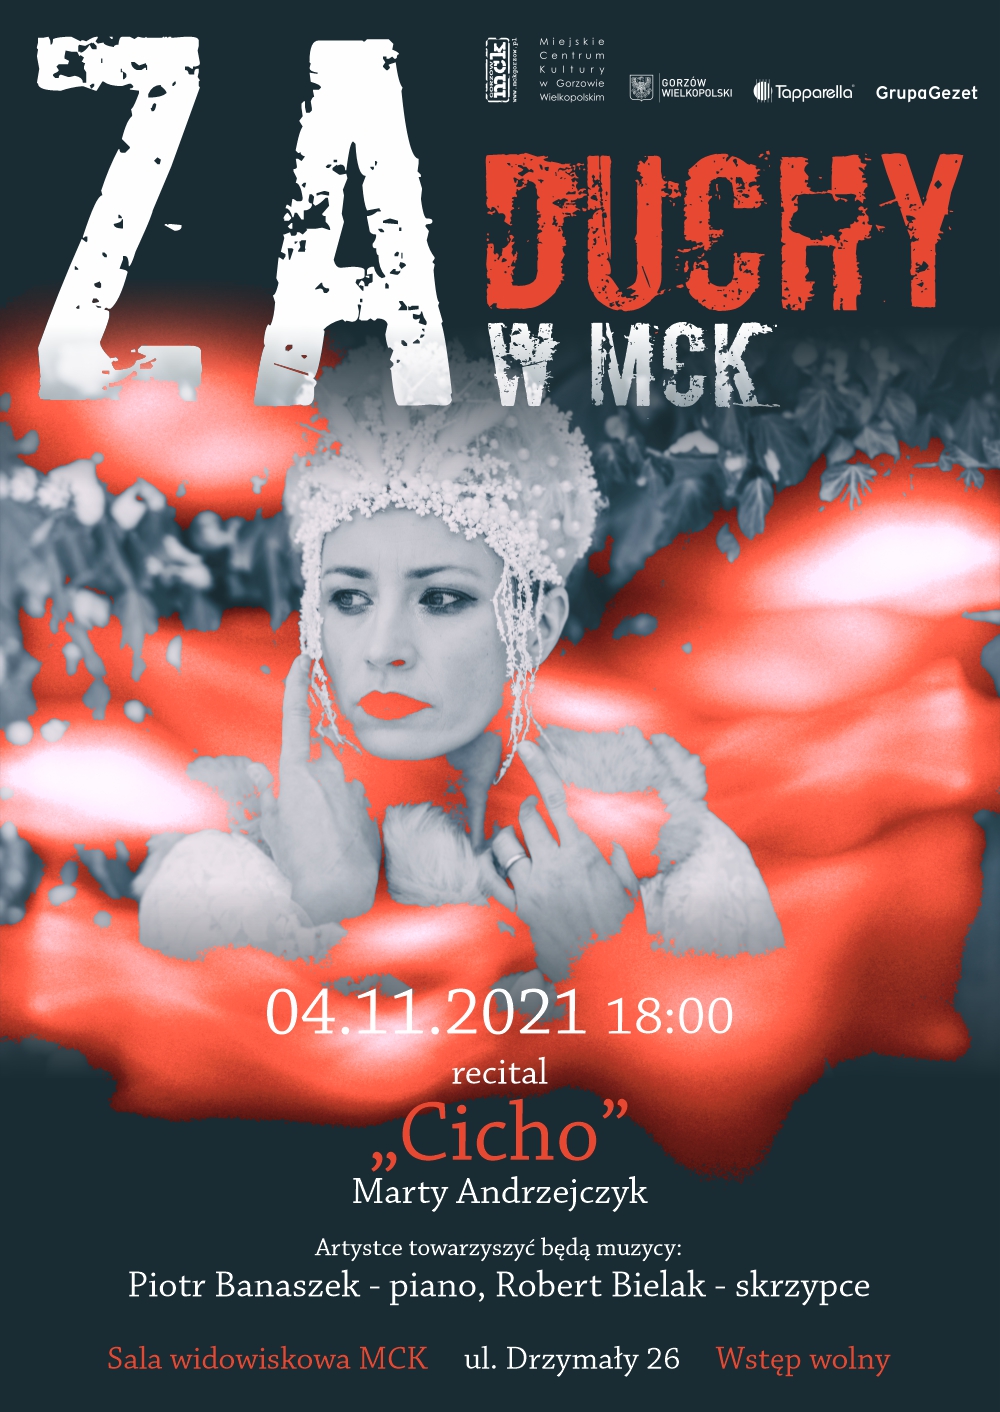 Grafika wydarzenia zaDUCHY w MCK – recital „Cicho” Marty Andrzejczyk